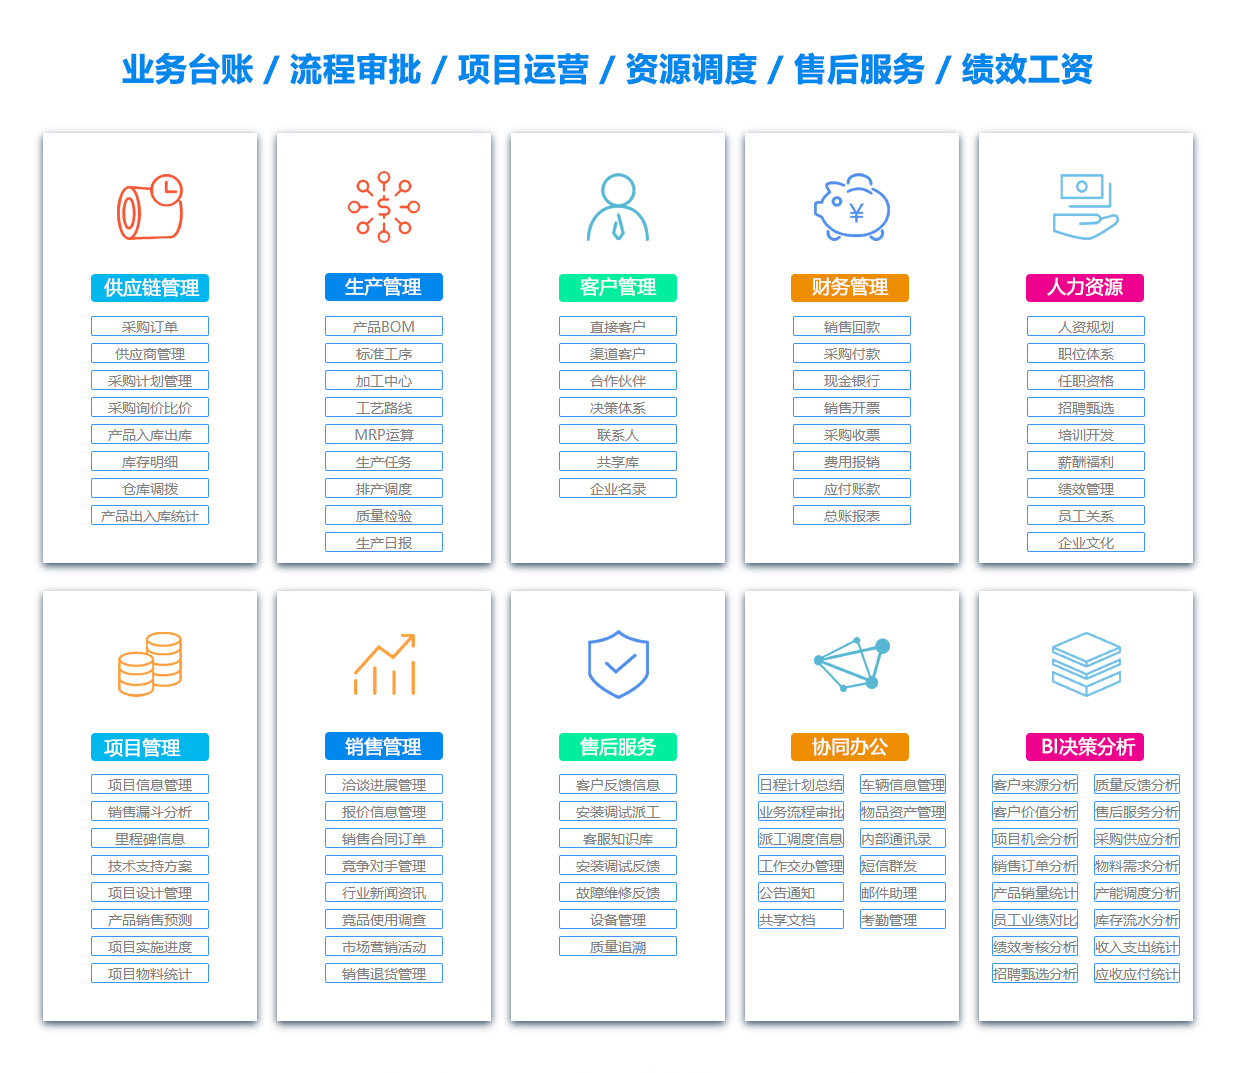 天津客户资料管理系统